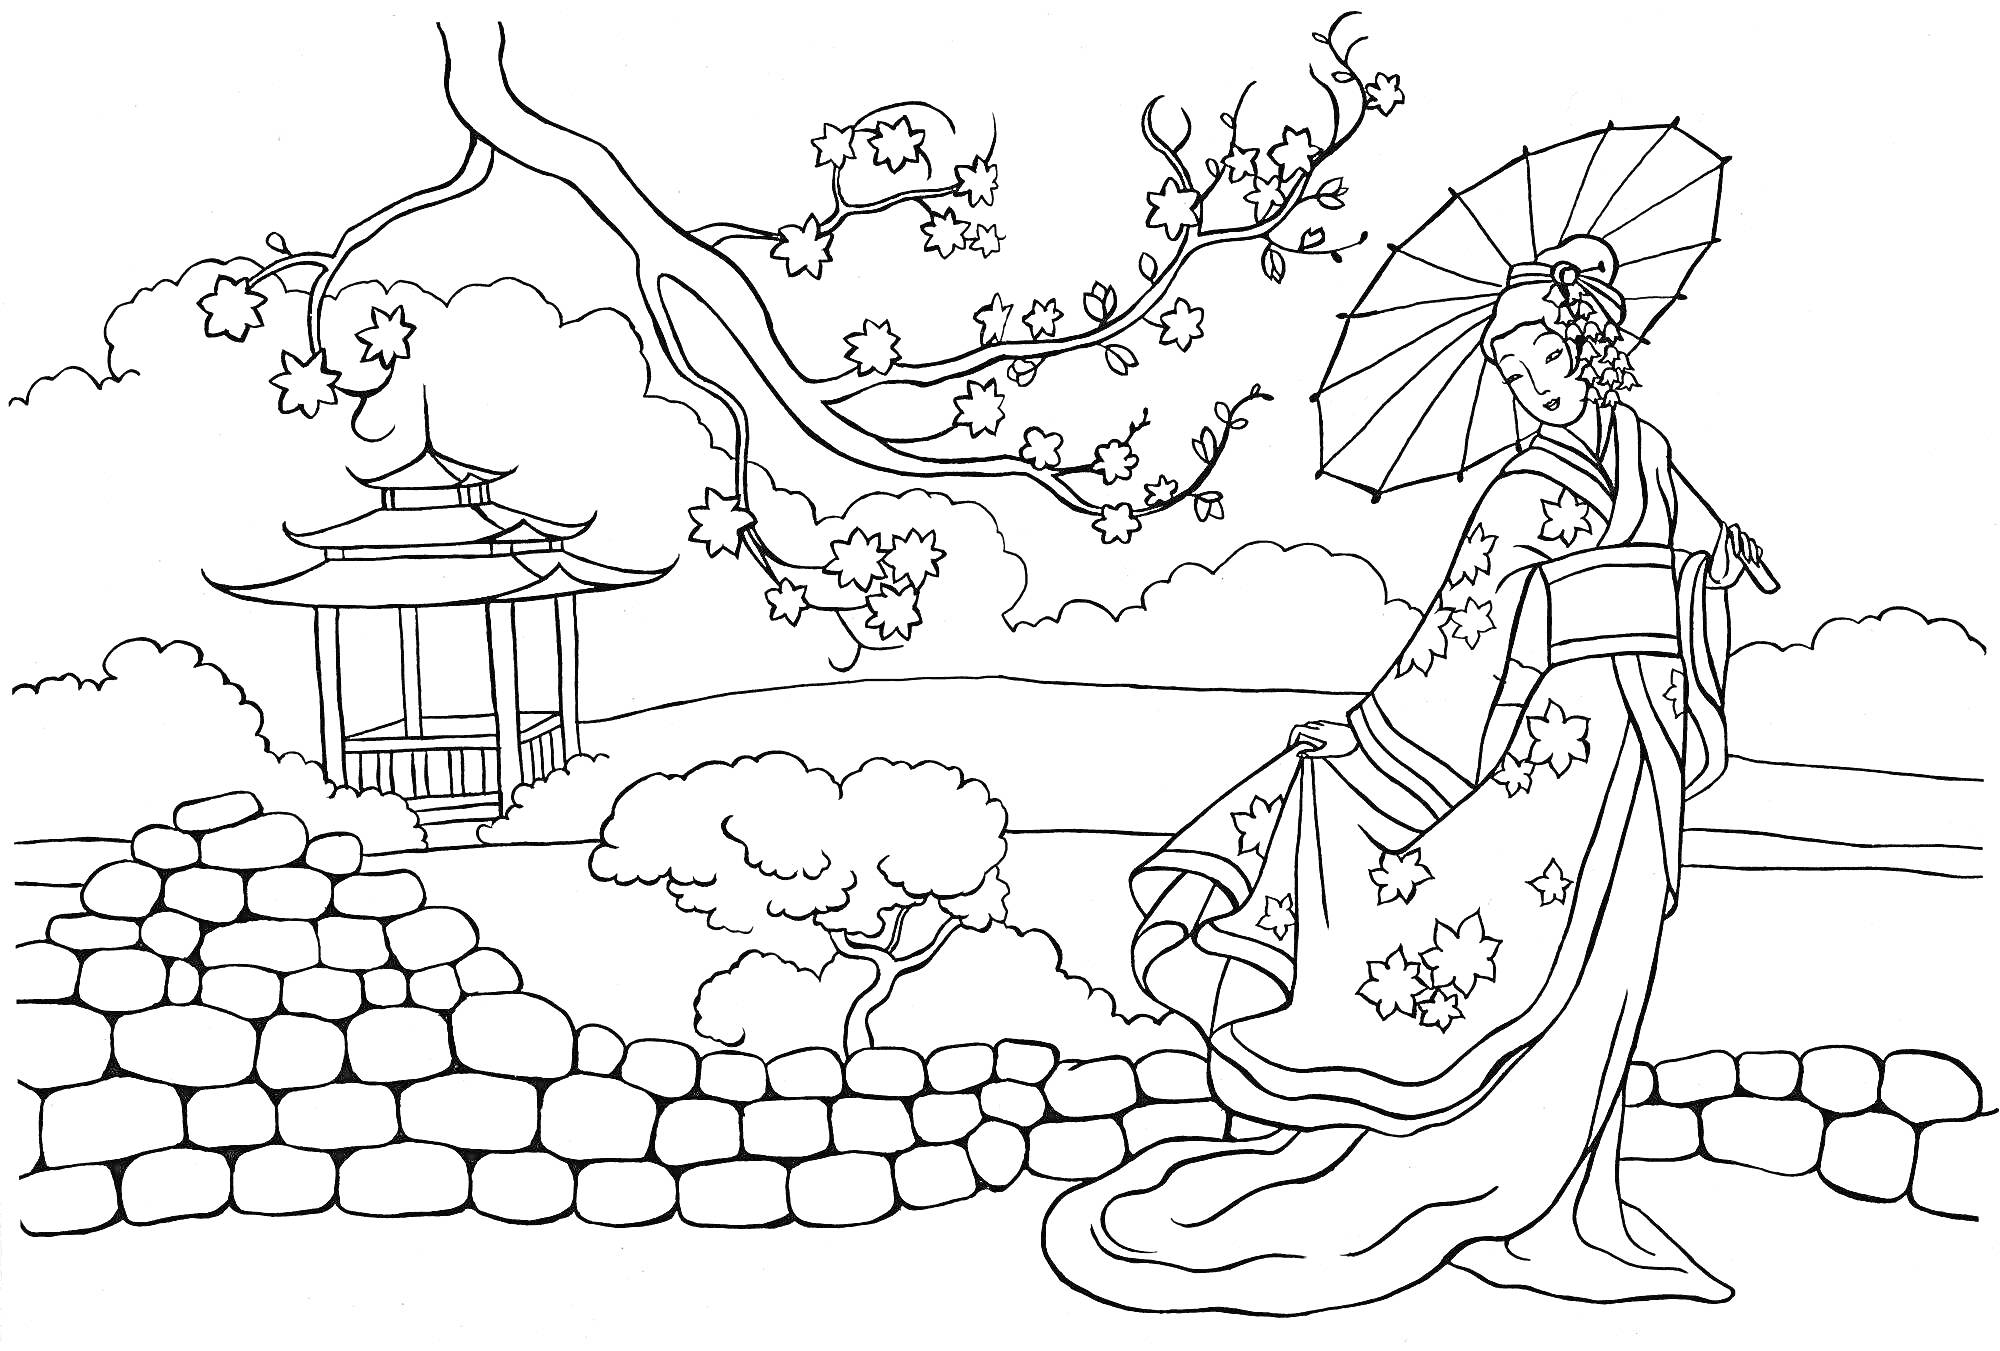 Раскраска Женщина в традиционном китайском одеянии с зонтиком возле каменной стены и китайской пагоды на фоне сакуры